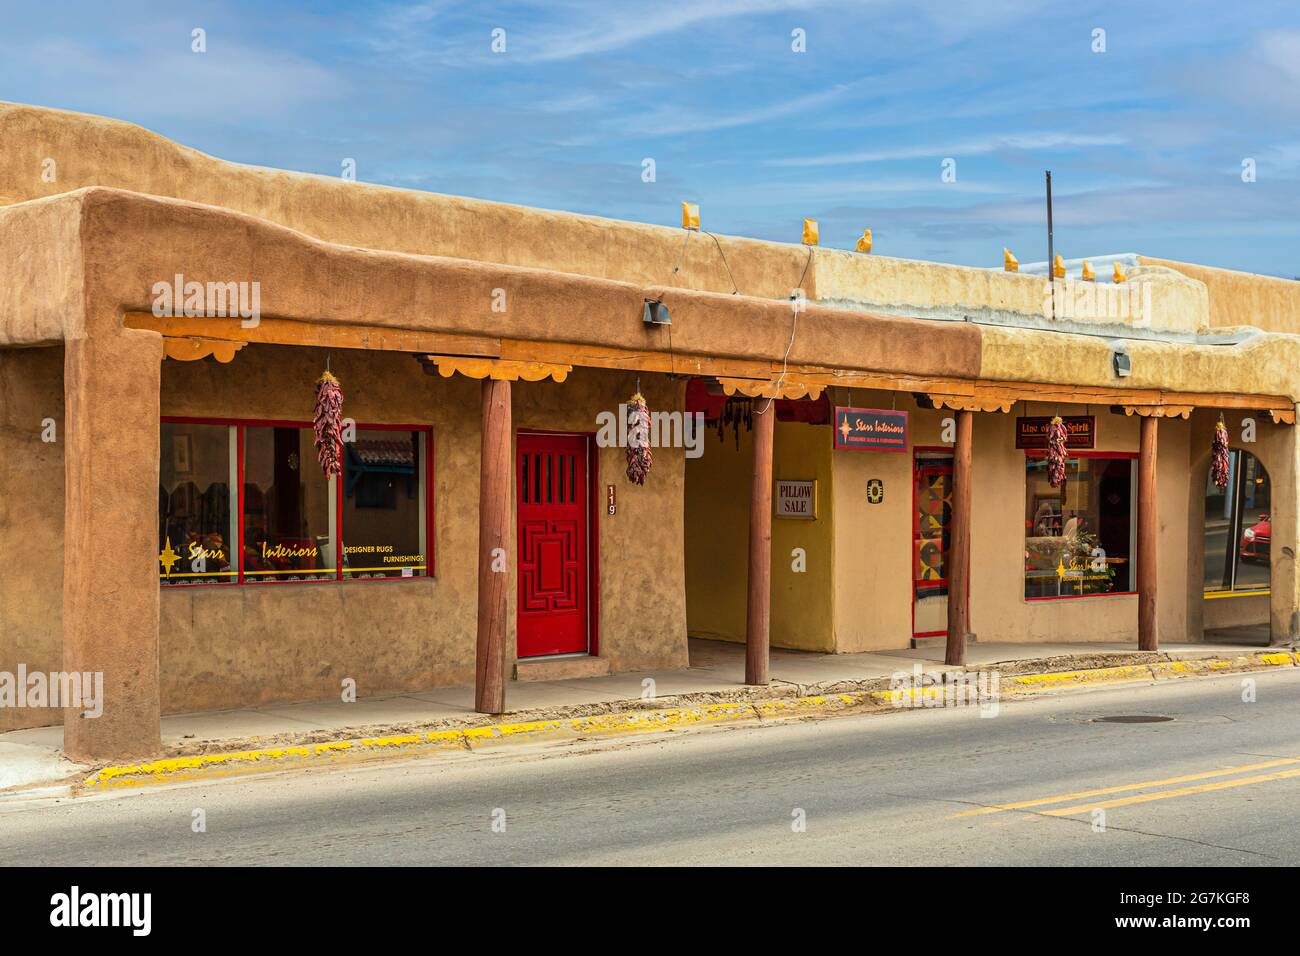 Taos, New Mexico, USA, 13 aprile 2014: Negozi in una struttura costruita con adobe, un materiale fatto di terra e materiali organici. Foto Stock